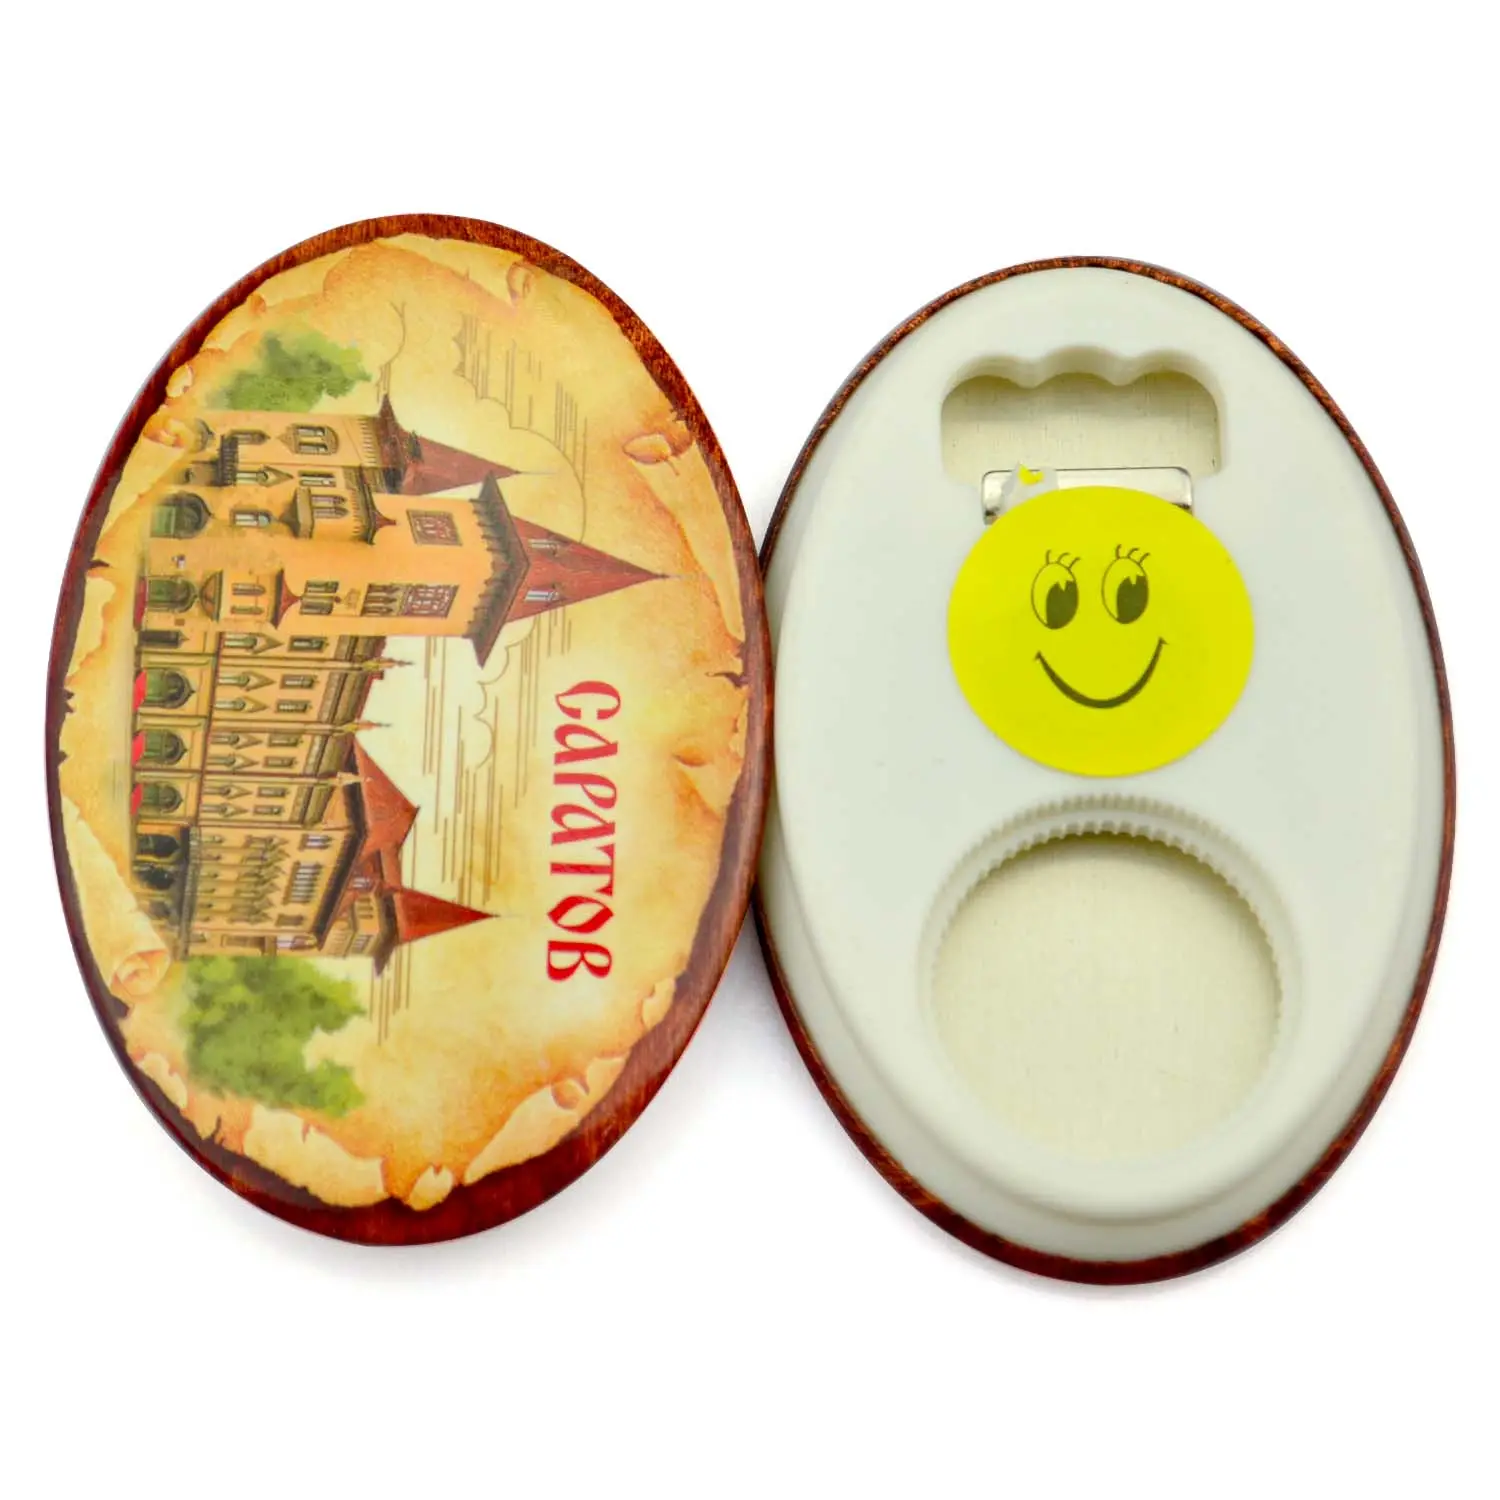 cadeaux promotionnels d'usine, Logo imprimé personnalisé, Badge de bouton rond vierge, boutons en fer blanc personnalisés